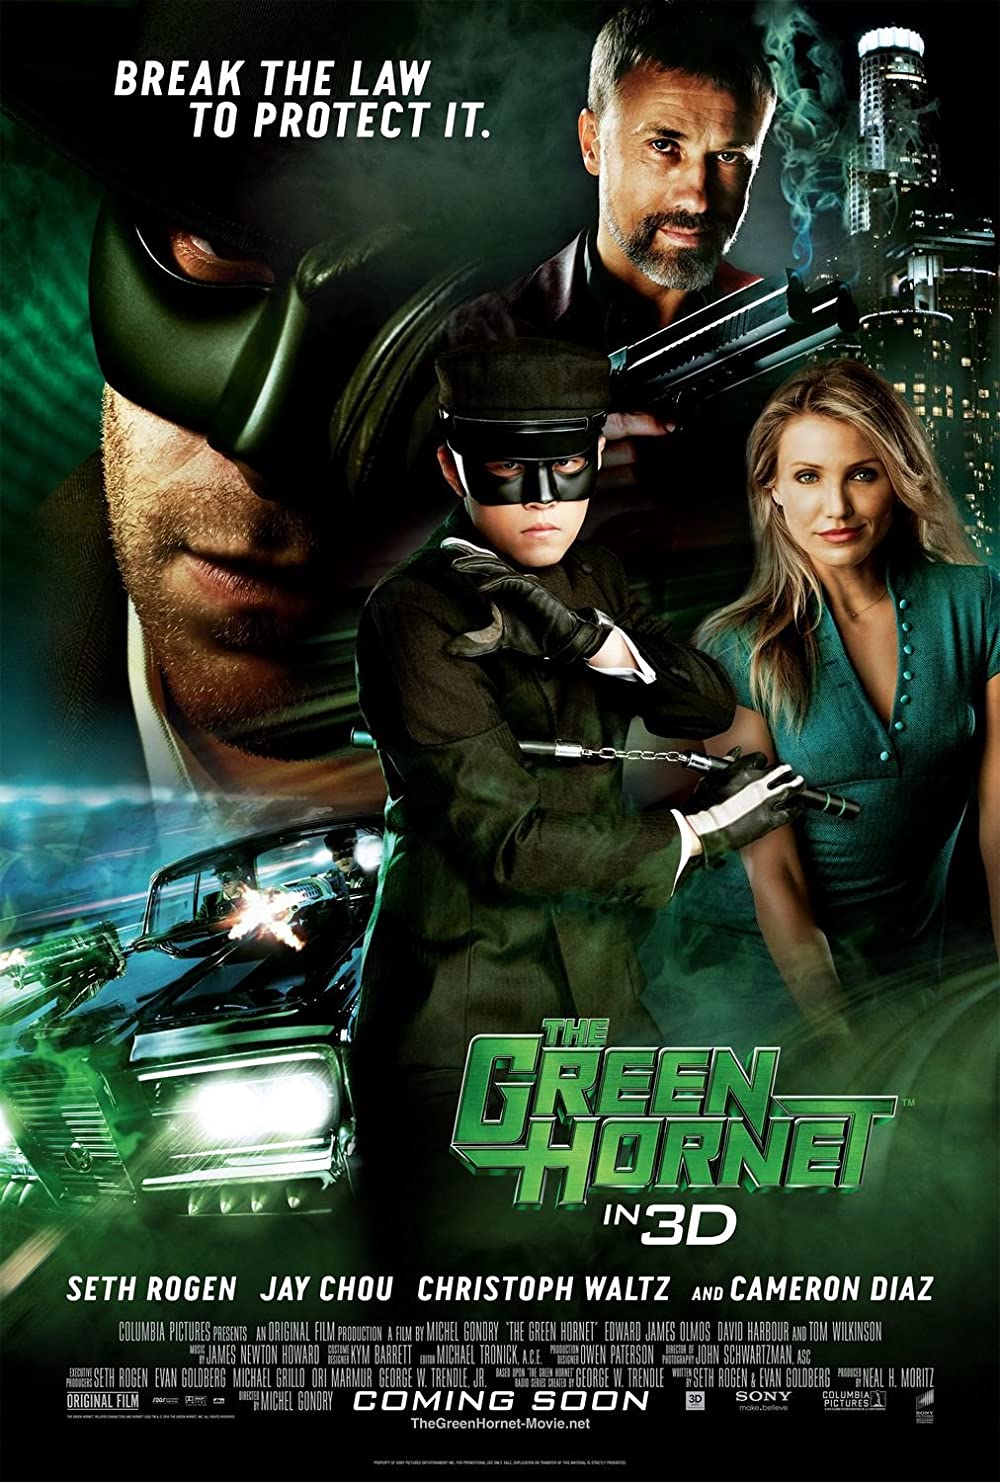 Filmbeschreibung zu The Green Hornet